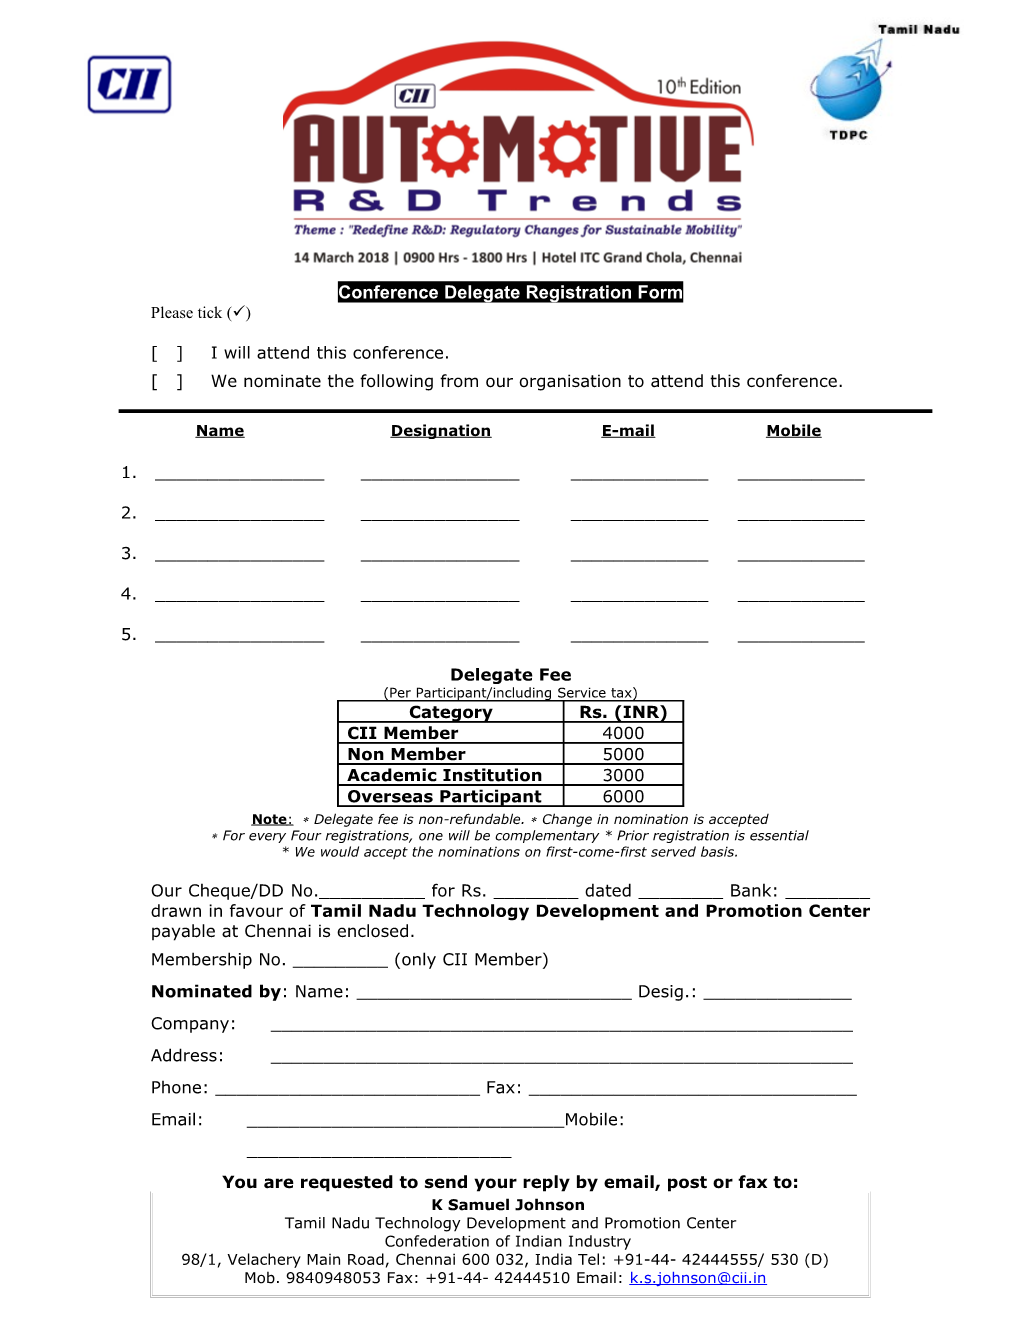 Conference Delegate Registration Form